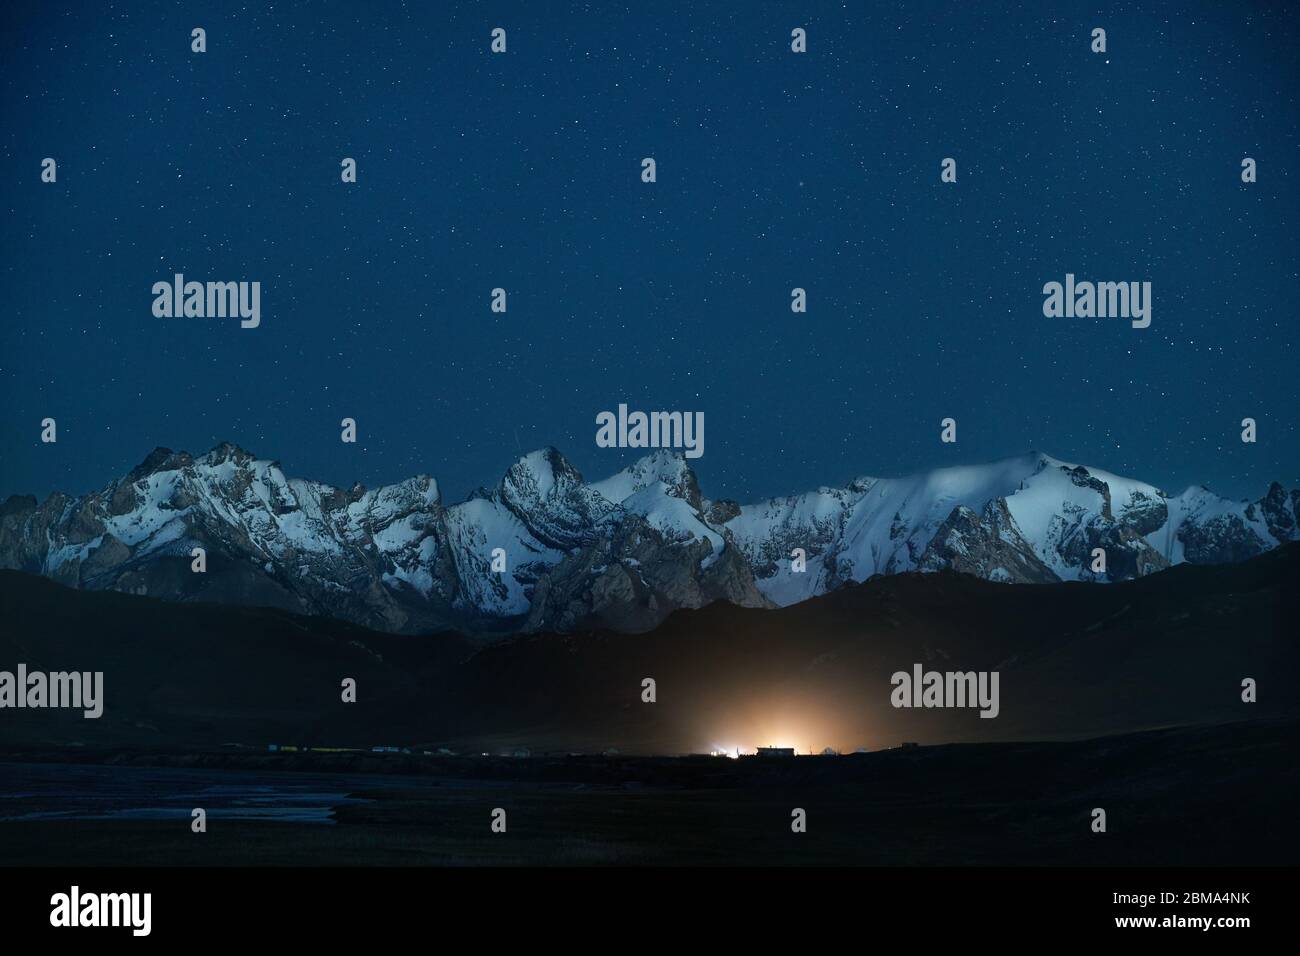 De beaux paysages de montagnes aux sommets enneigés et camp rougeoyant sous nuit ciel plein d'étoiles près de Kel Suu Lake dans la région de Naryn, Kirghizistan Banque D'Images